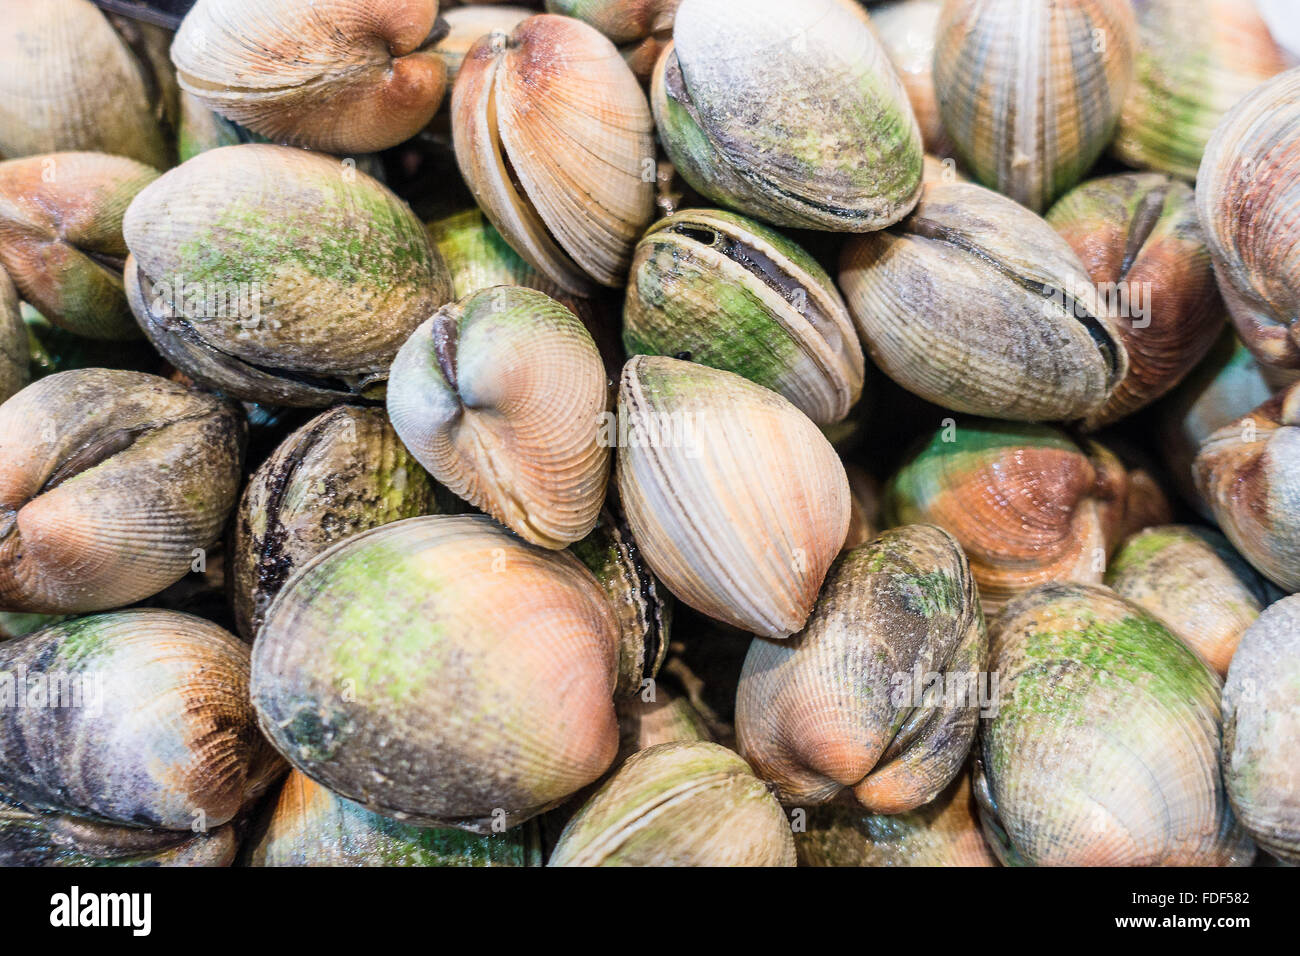 Frische Muscheln auf einem Markt Stockfotografie - Alamy